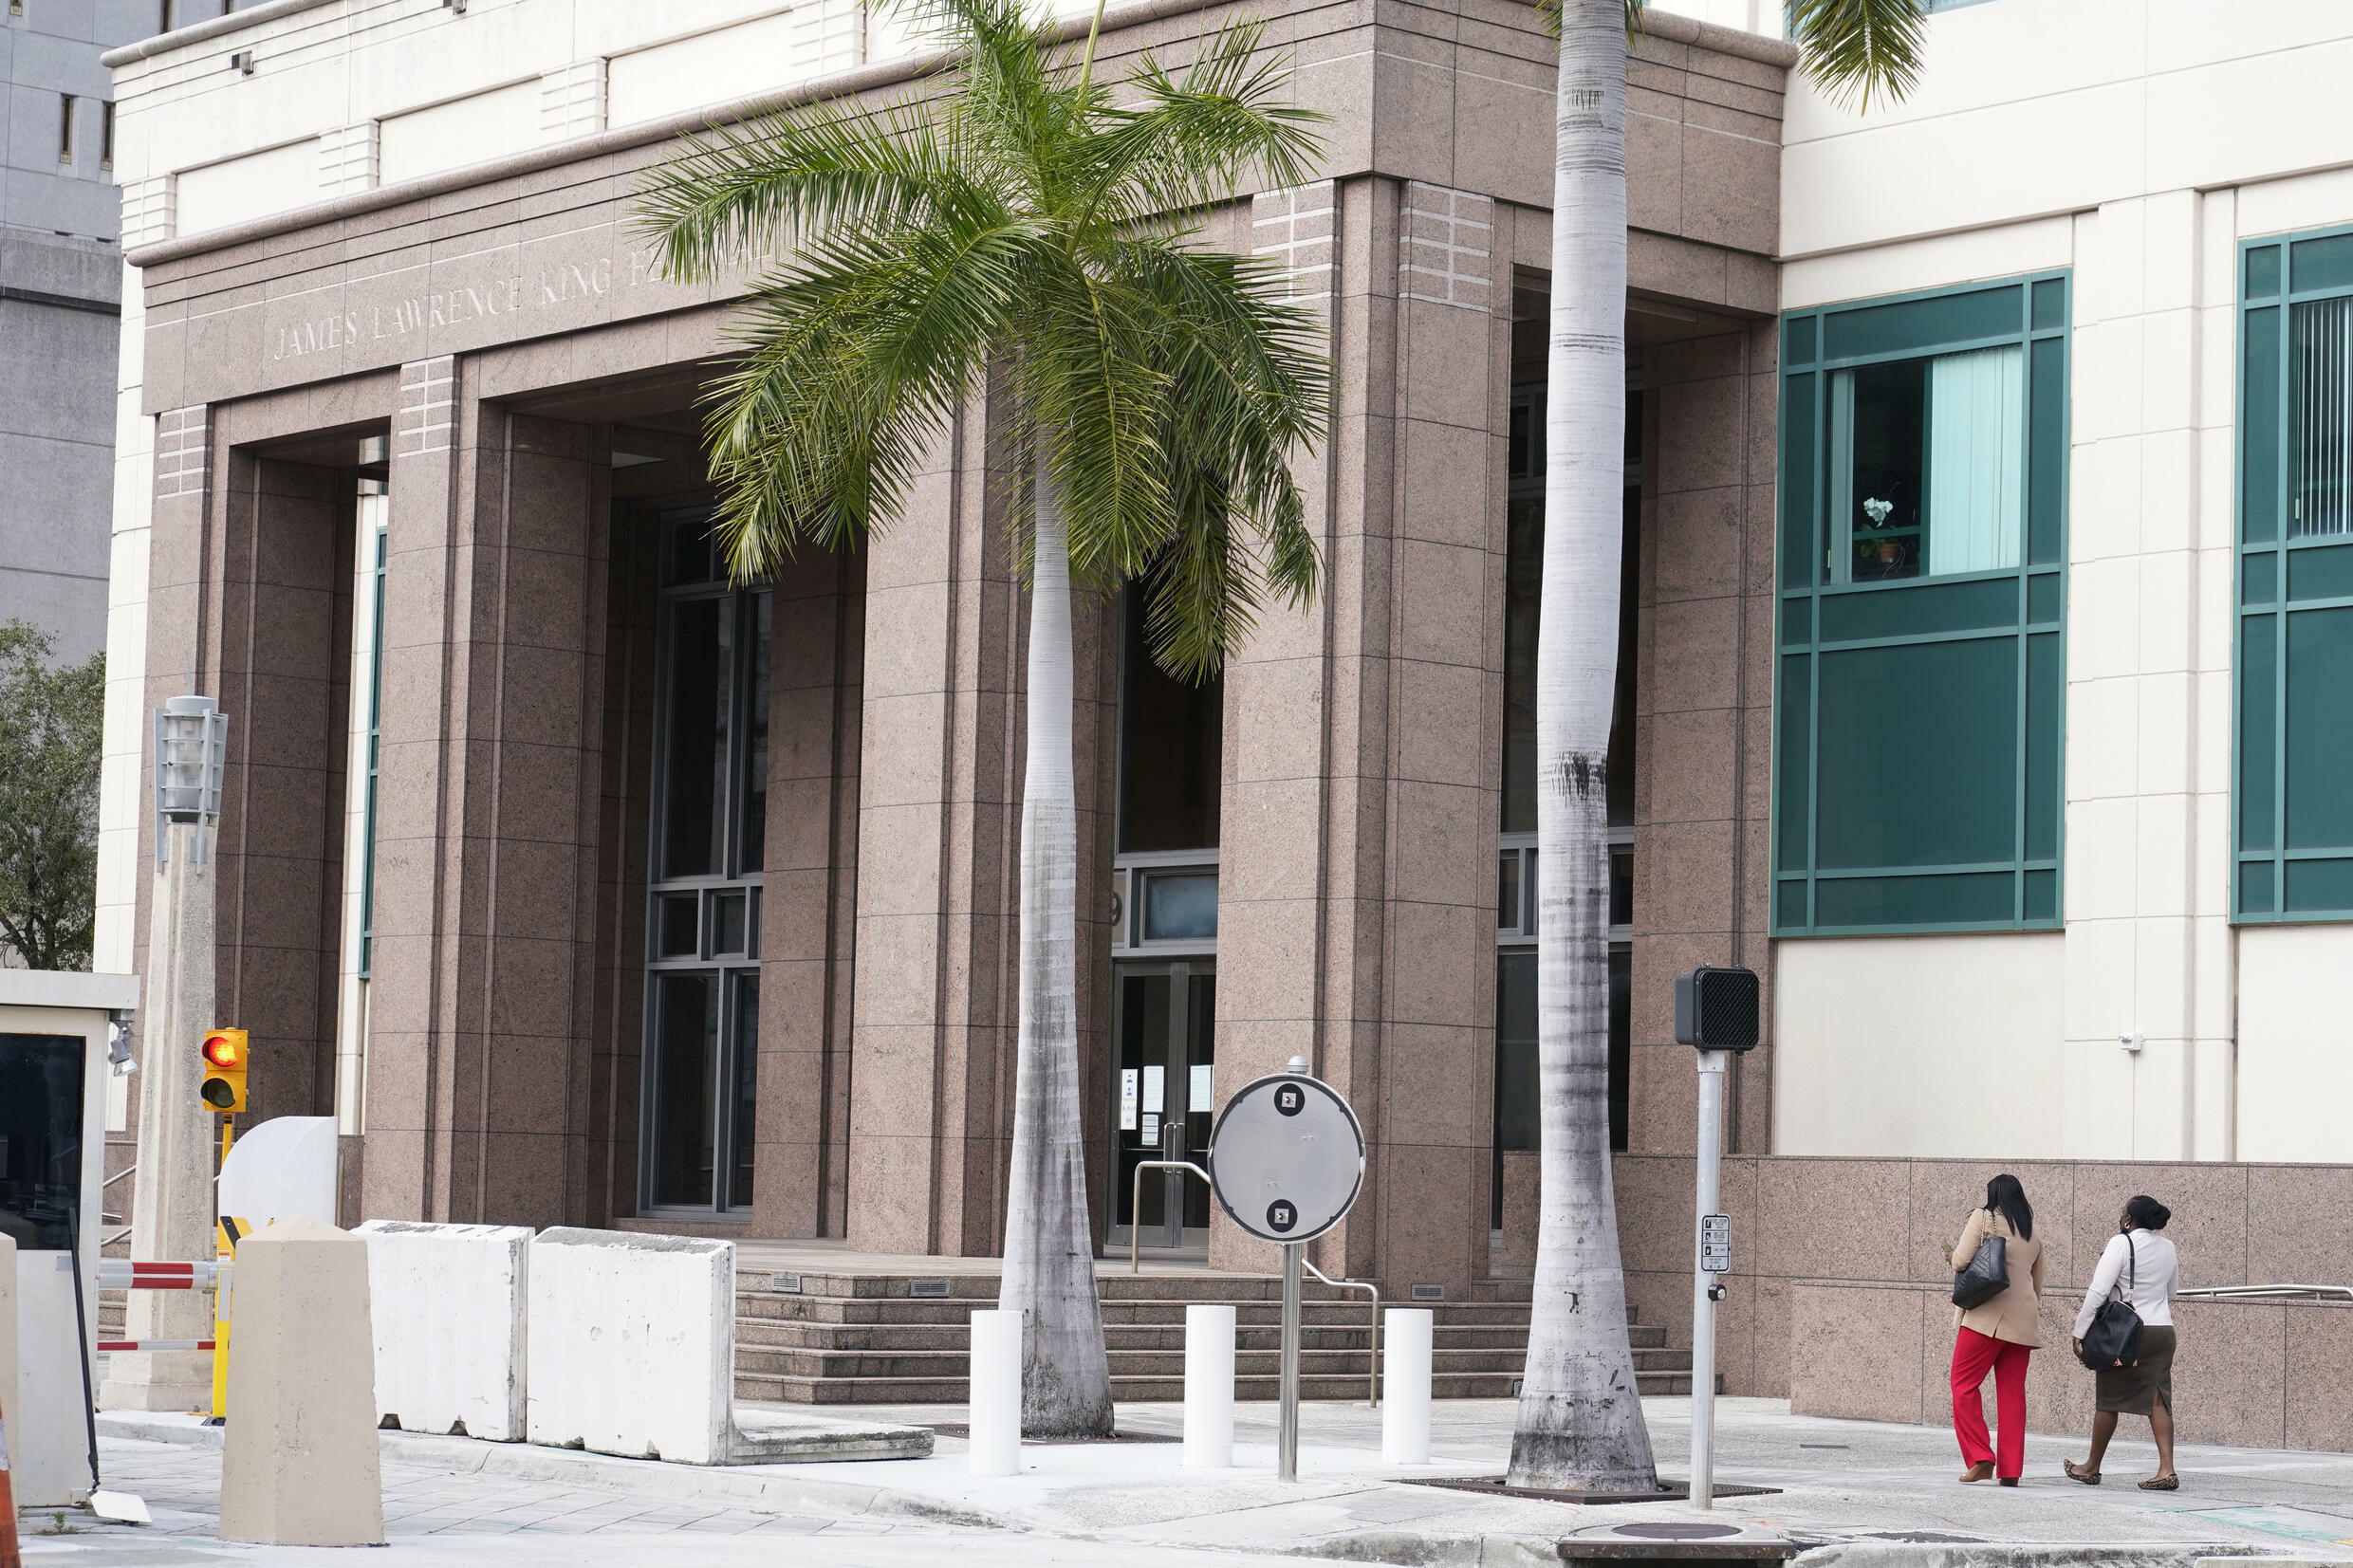 RFI Image Archive / Aux Etats-Unis, Mario Antonio Palacios, un ancien militaire colombien, âgé de 45 ans, avait été arrêté en janvier 2022 par des agents fédéraux dans le cadre du complot visant à assassiner le président haïtien Jovenel Moise. Ici, le tribunal de Miami, en Floride. (illustration)